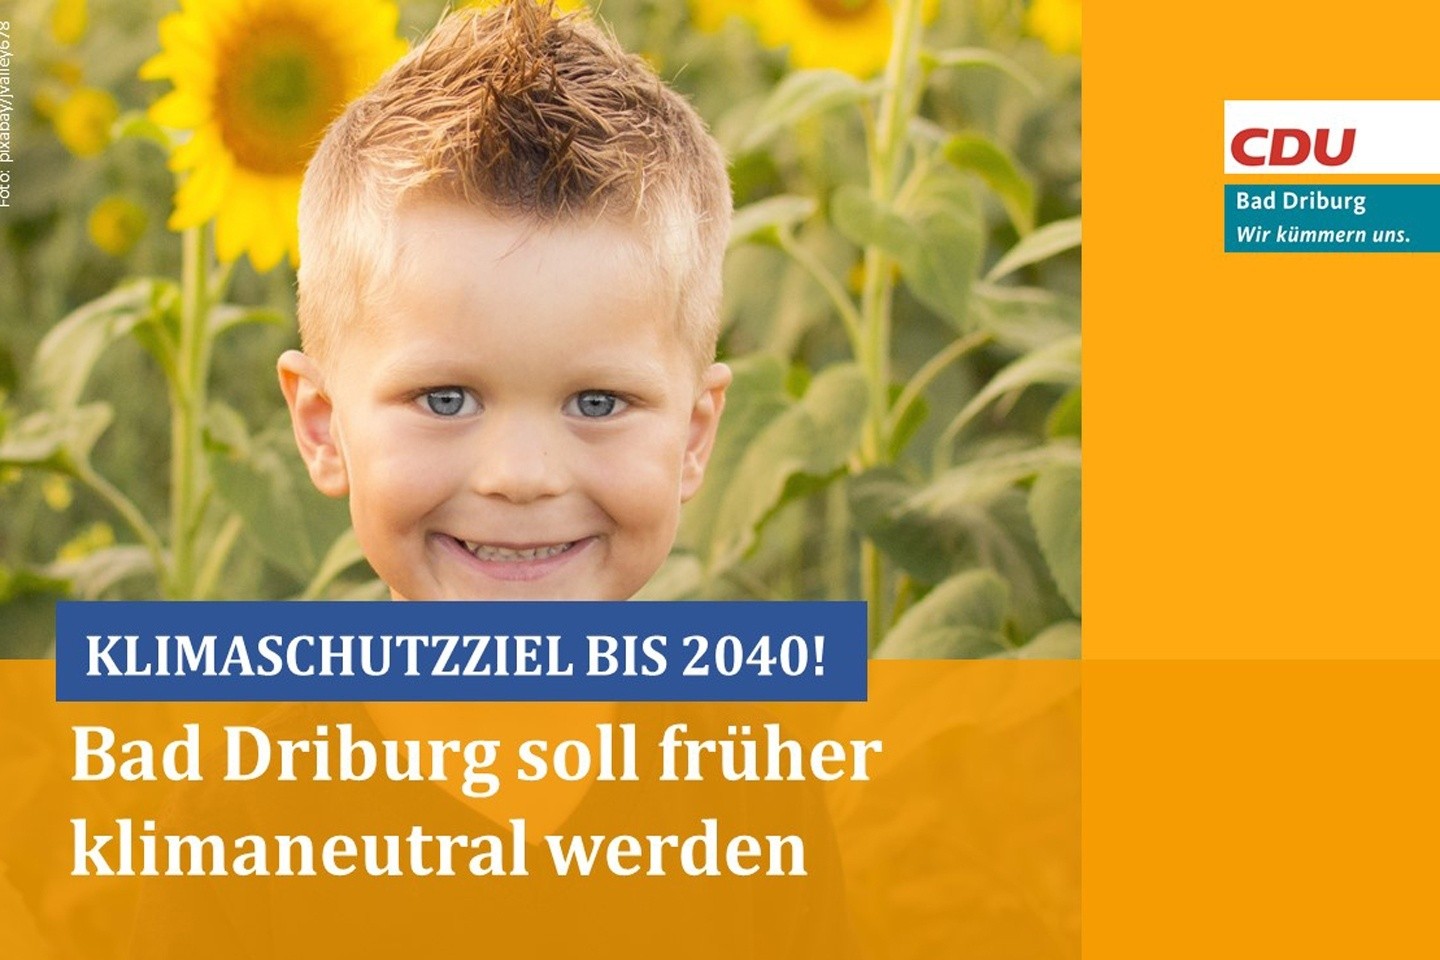 Pressemitteilung der CDU Bad Driburg: Bad Driburg bis 2040 klimaneutral